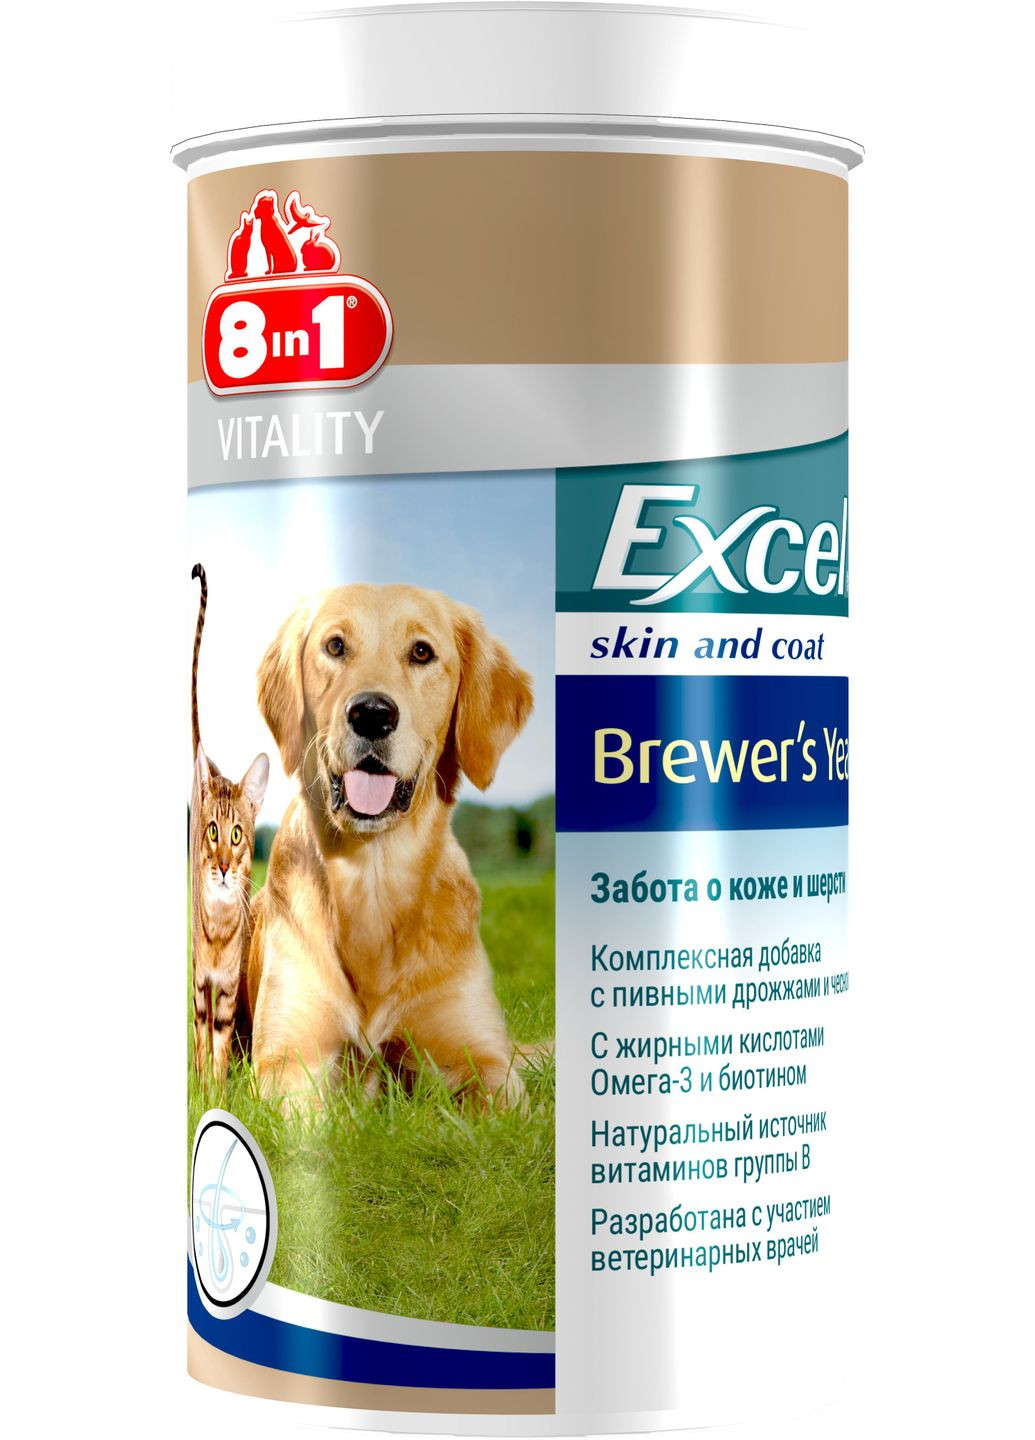 Пивные дрожжи Excel Brewers Yeast для кошек и собак таблетки 1430 шт (4048422115731) 8in1 (279562317)